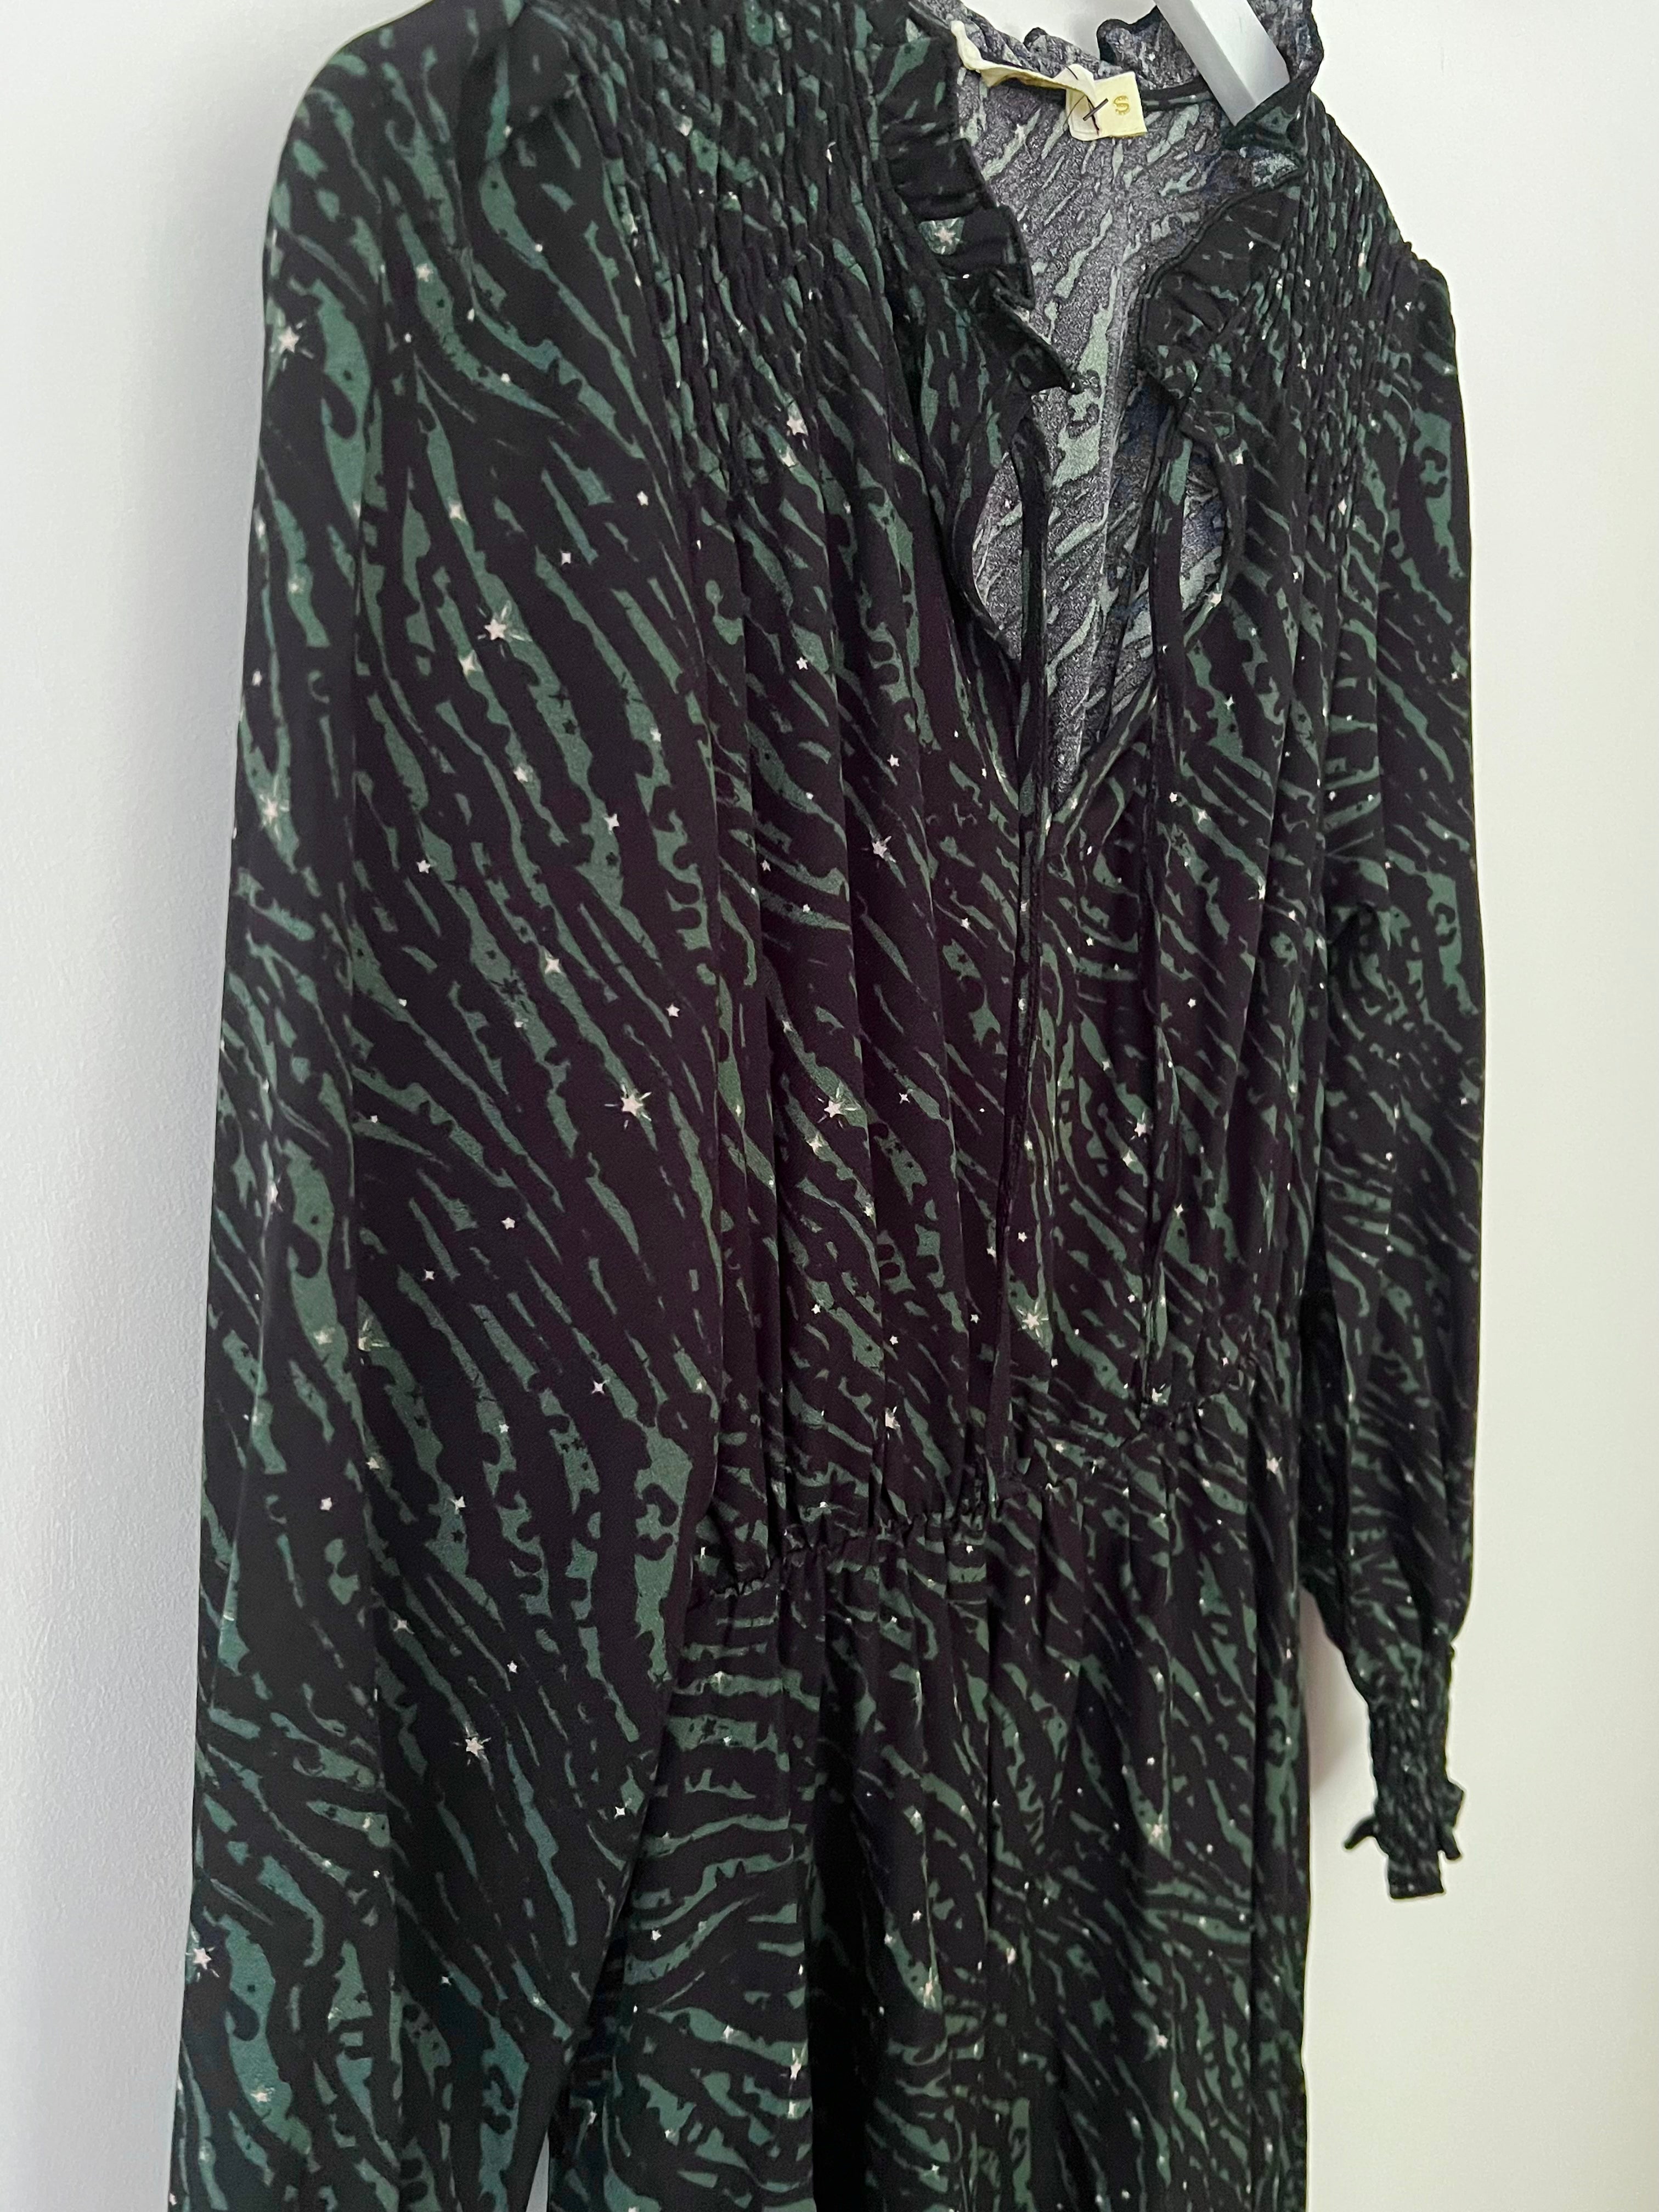 Zebra Star Print Midi Dress in Khaki & Black